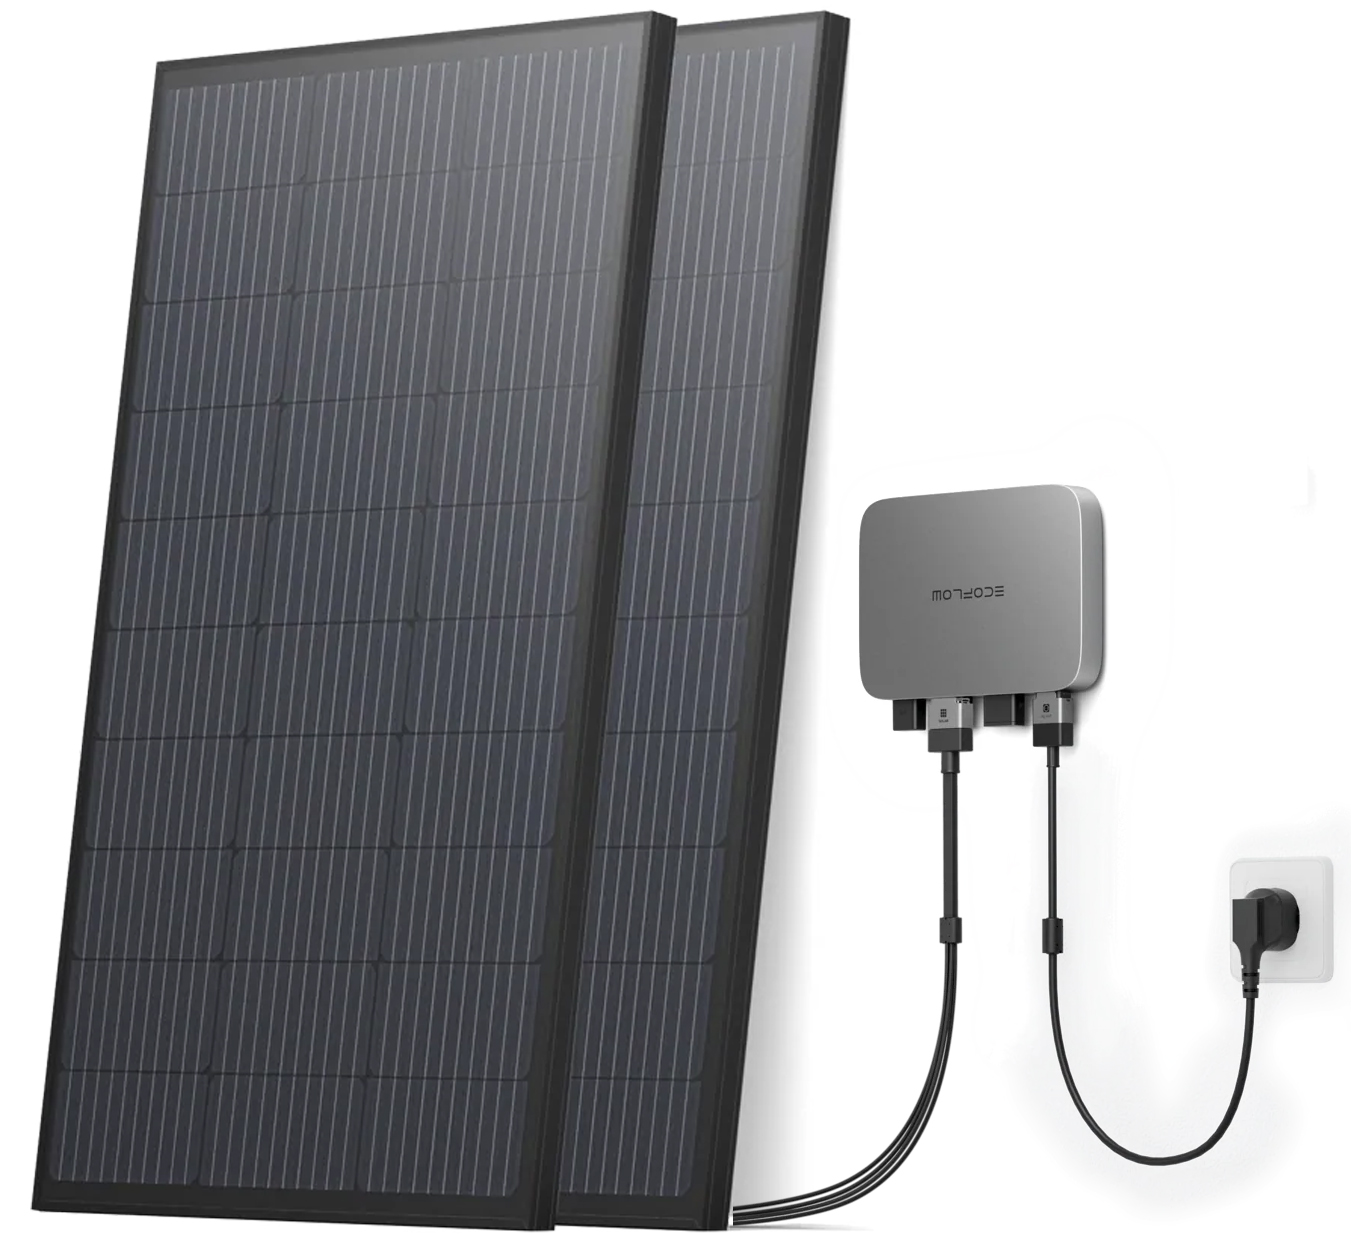 Система резервного живлення EcoFlow PowerStream - микроинвертор 800W + 2 x 400W стационарные солнечные панели